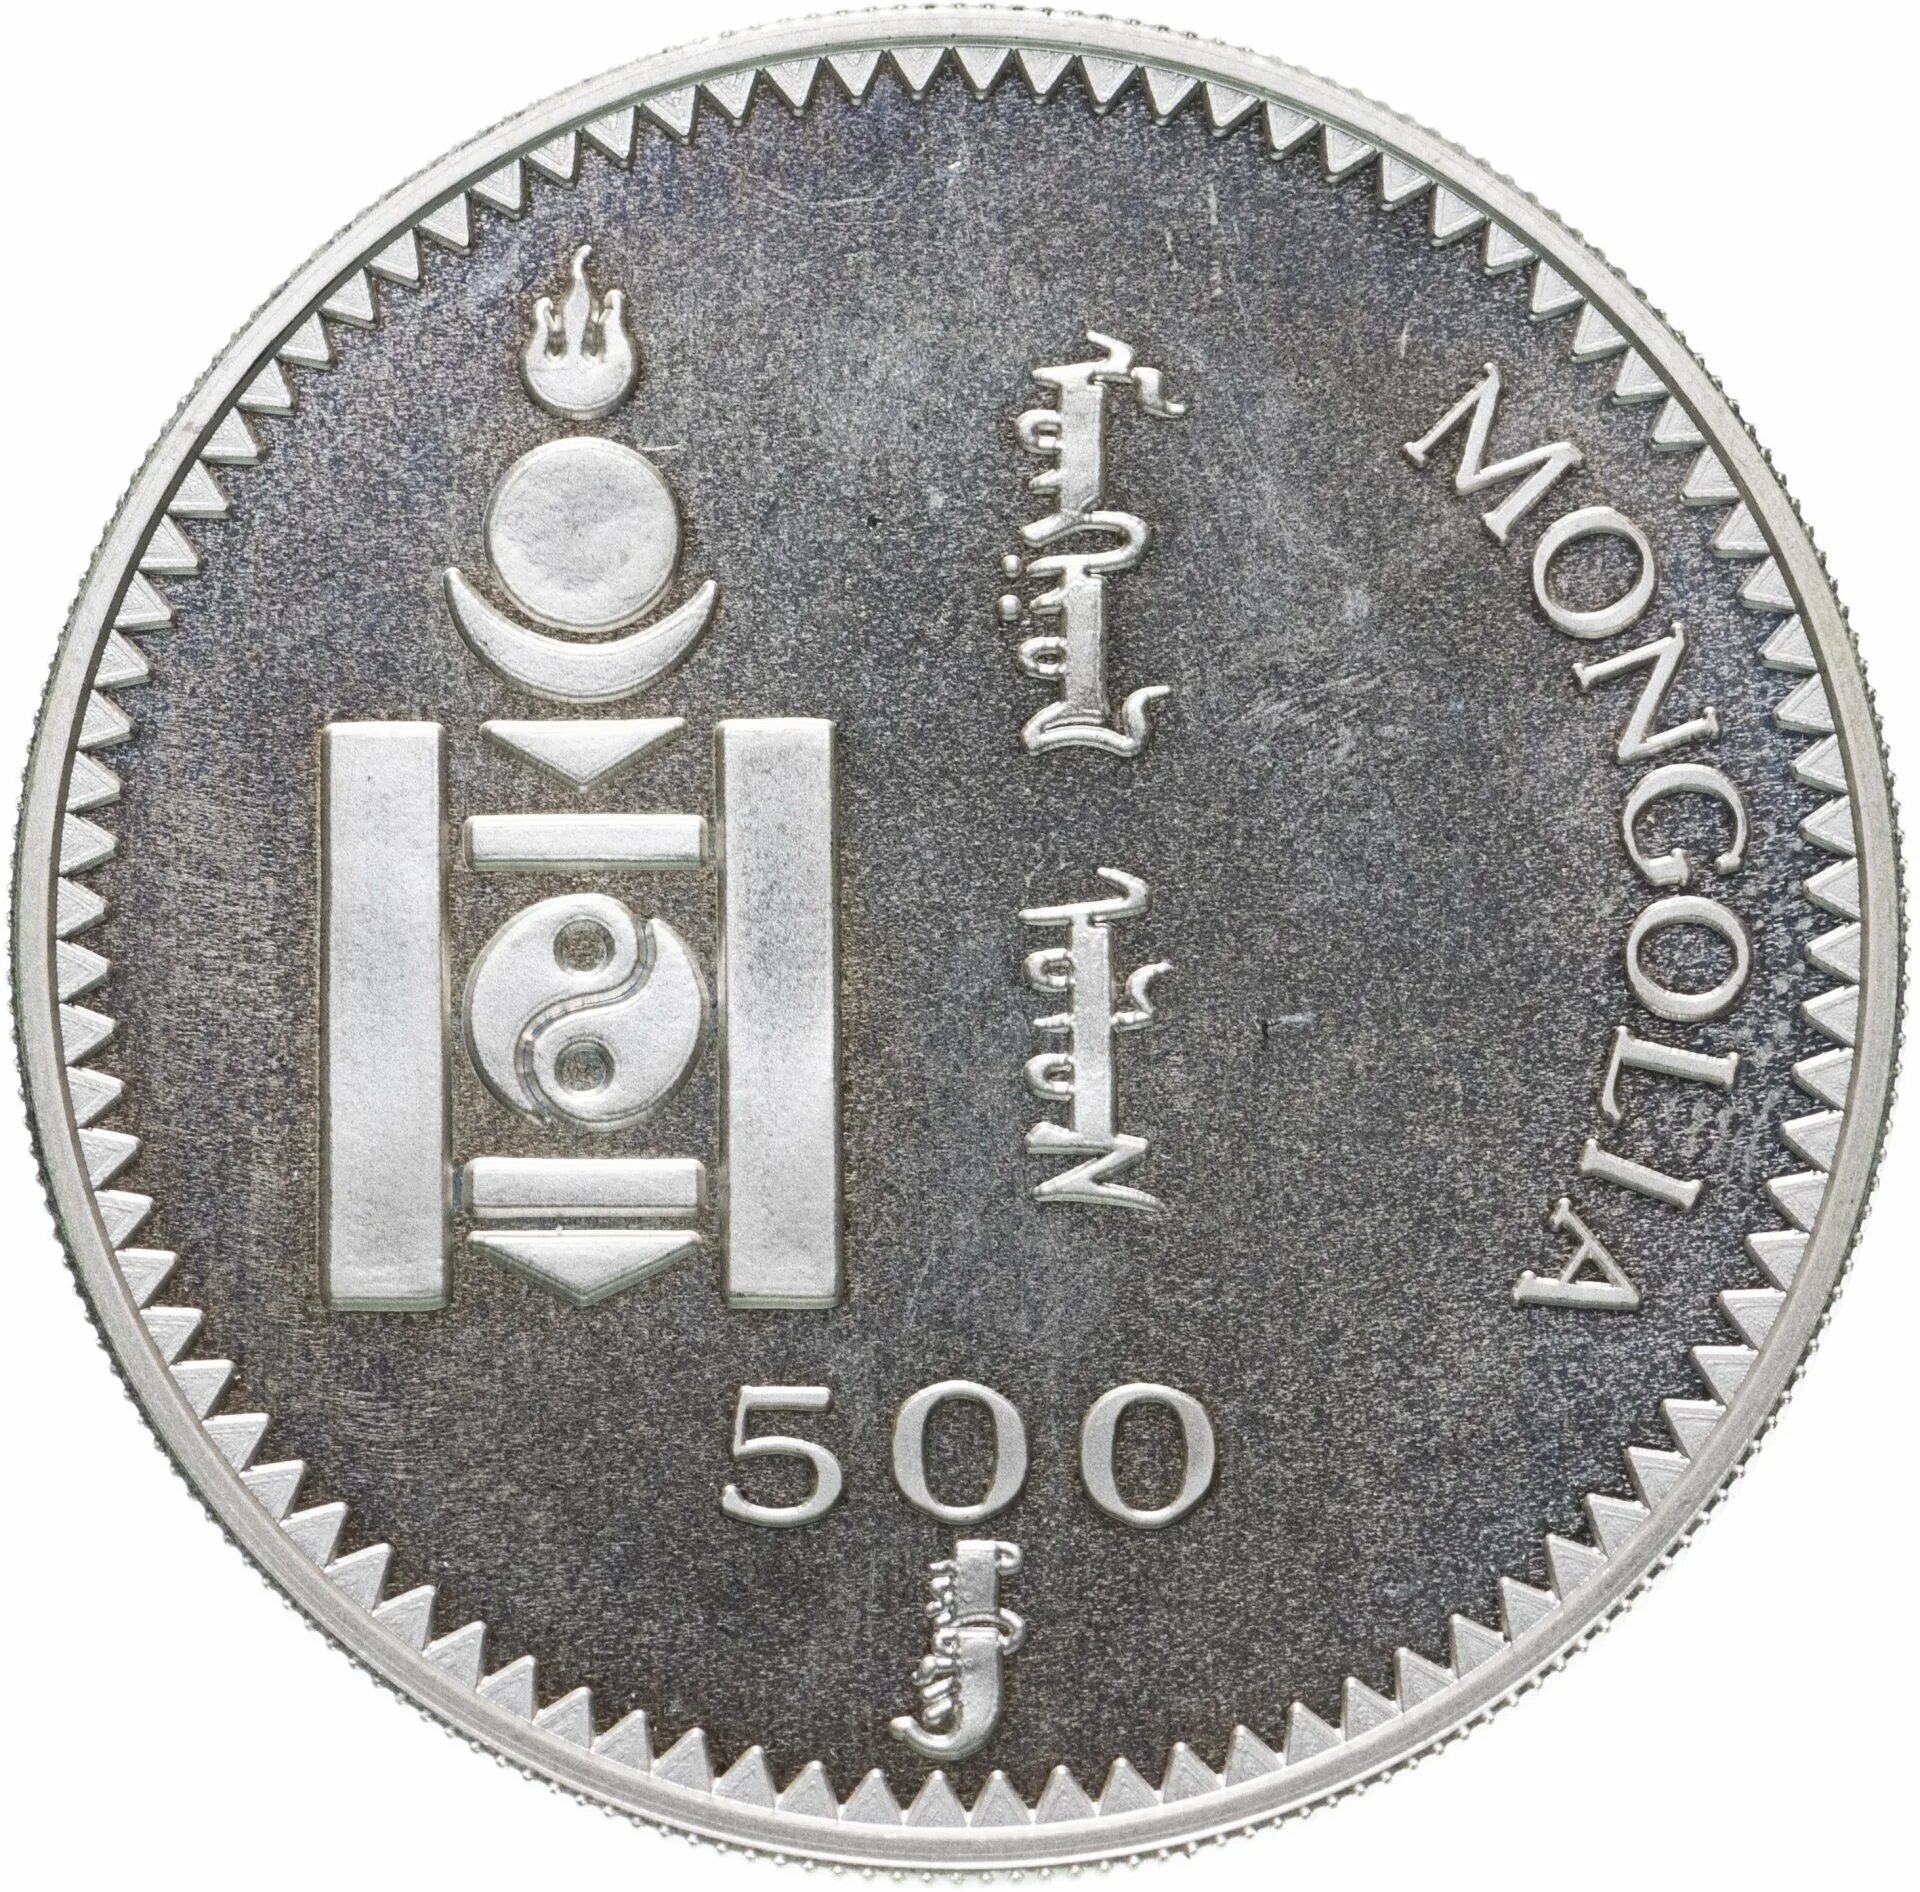 500 Тугриков Монголия. Валюта Монголии монеты. Монгольские монеты 500 тугриков. Монгольский тугрик монета. 1 тугрик сколько рублей